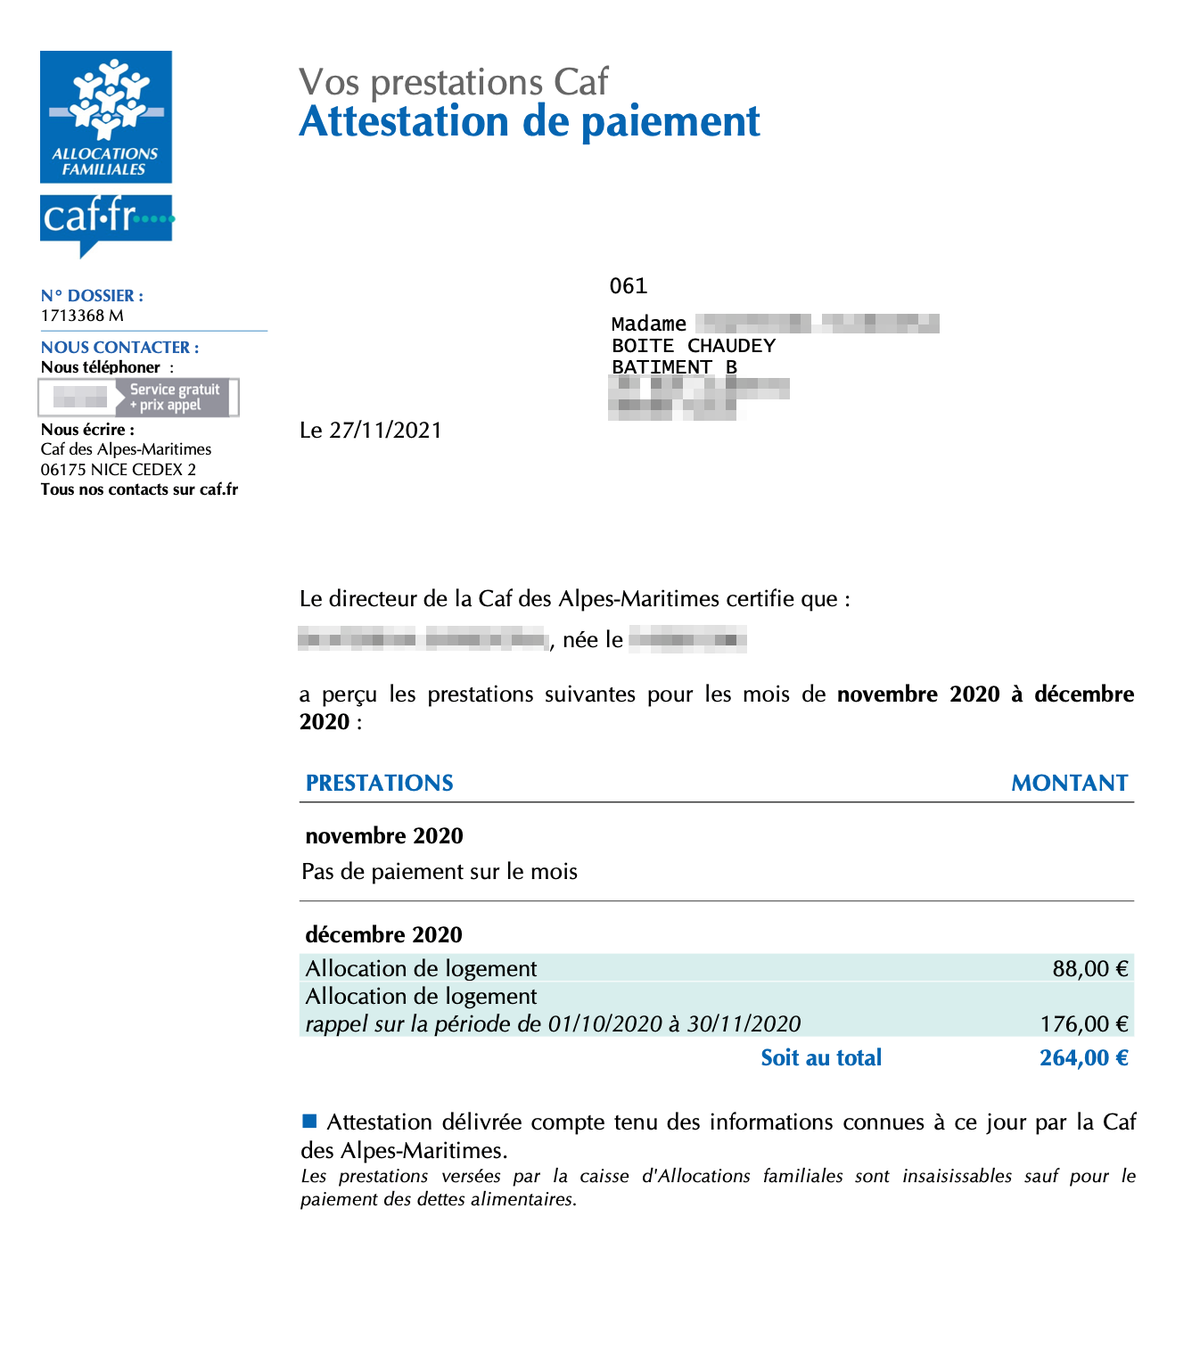 Выписка из моего личного кабинета CAF: в ноябре я не получала никаких выплат, за декабрь выплата составила 88 €, за период с 1 октября по 30 ноября — 176 €